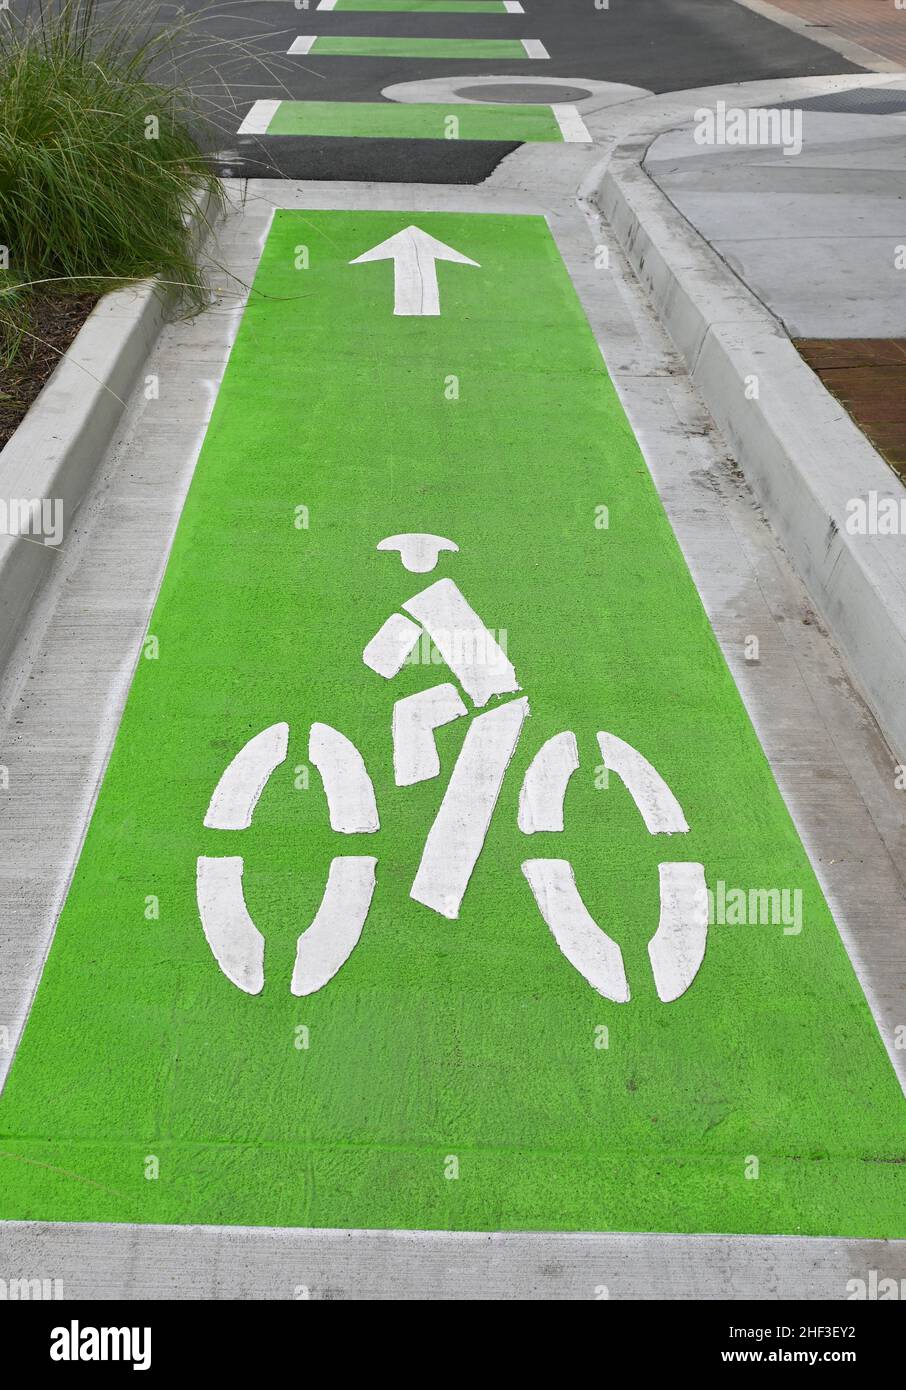 SANTA ANA, KALIFORNIEN - 10. JAN 2022: Nahaufnahme einer abgetrennten Fahrradspur und einer grünen Fahrbahnmarkierung im Stadtzentrum. Stockfoto